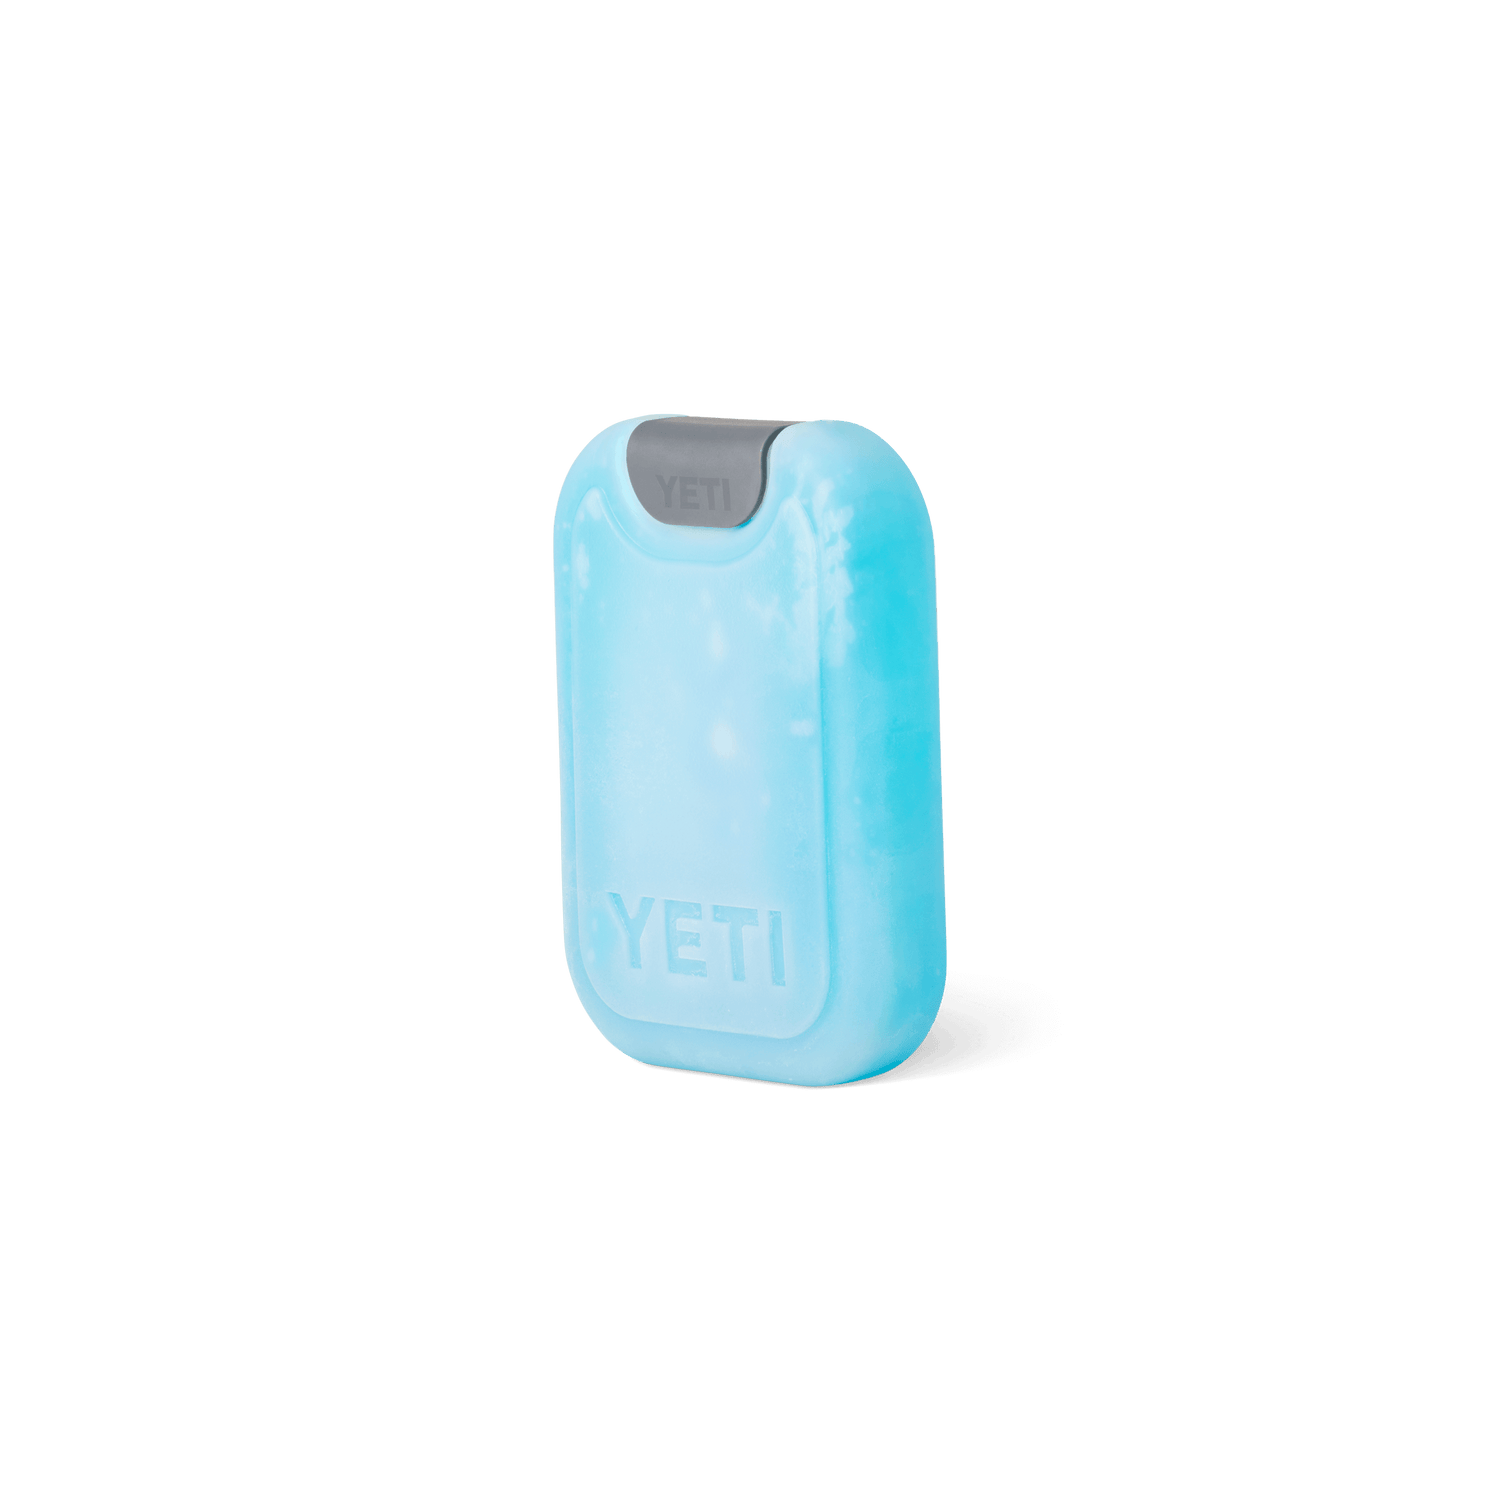 YETI Yeti Thin Ice Small Ice Pack Clear